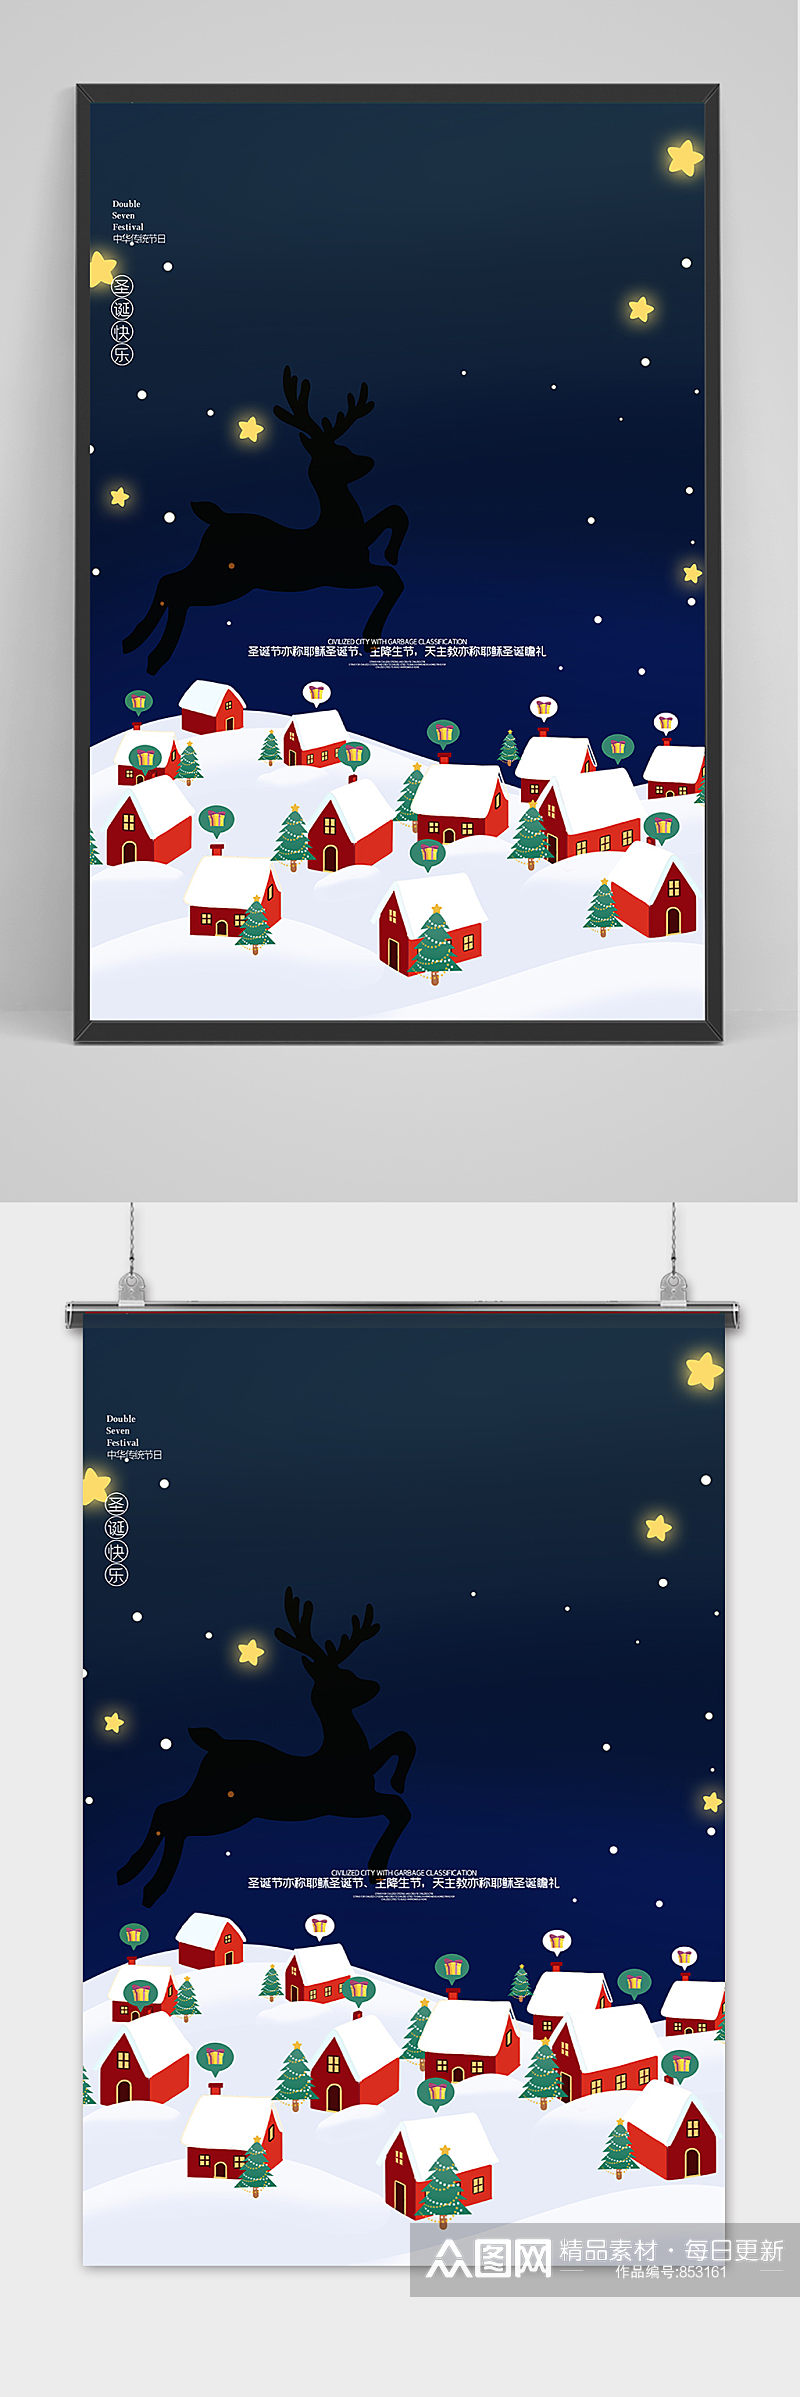 唯美雪景创意风格圣诞节户外海报素材